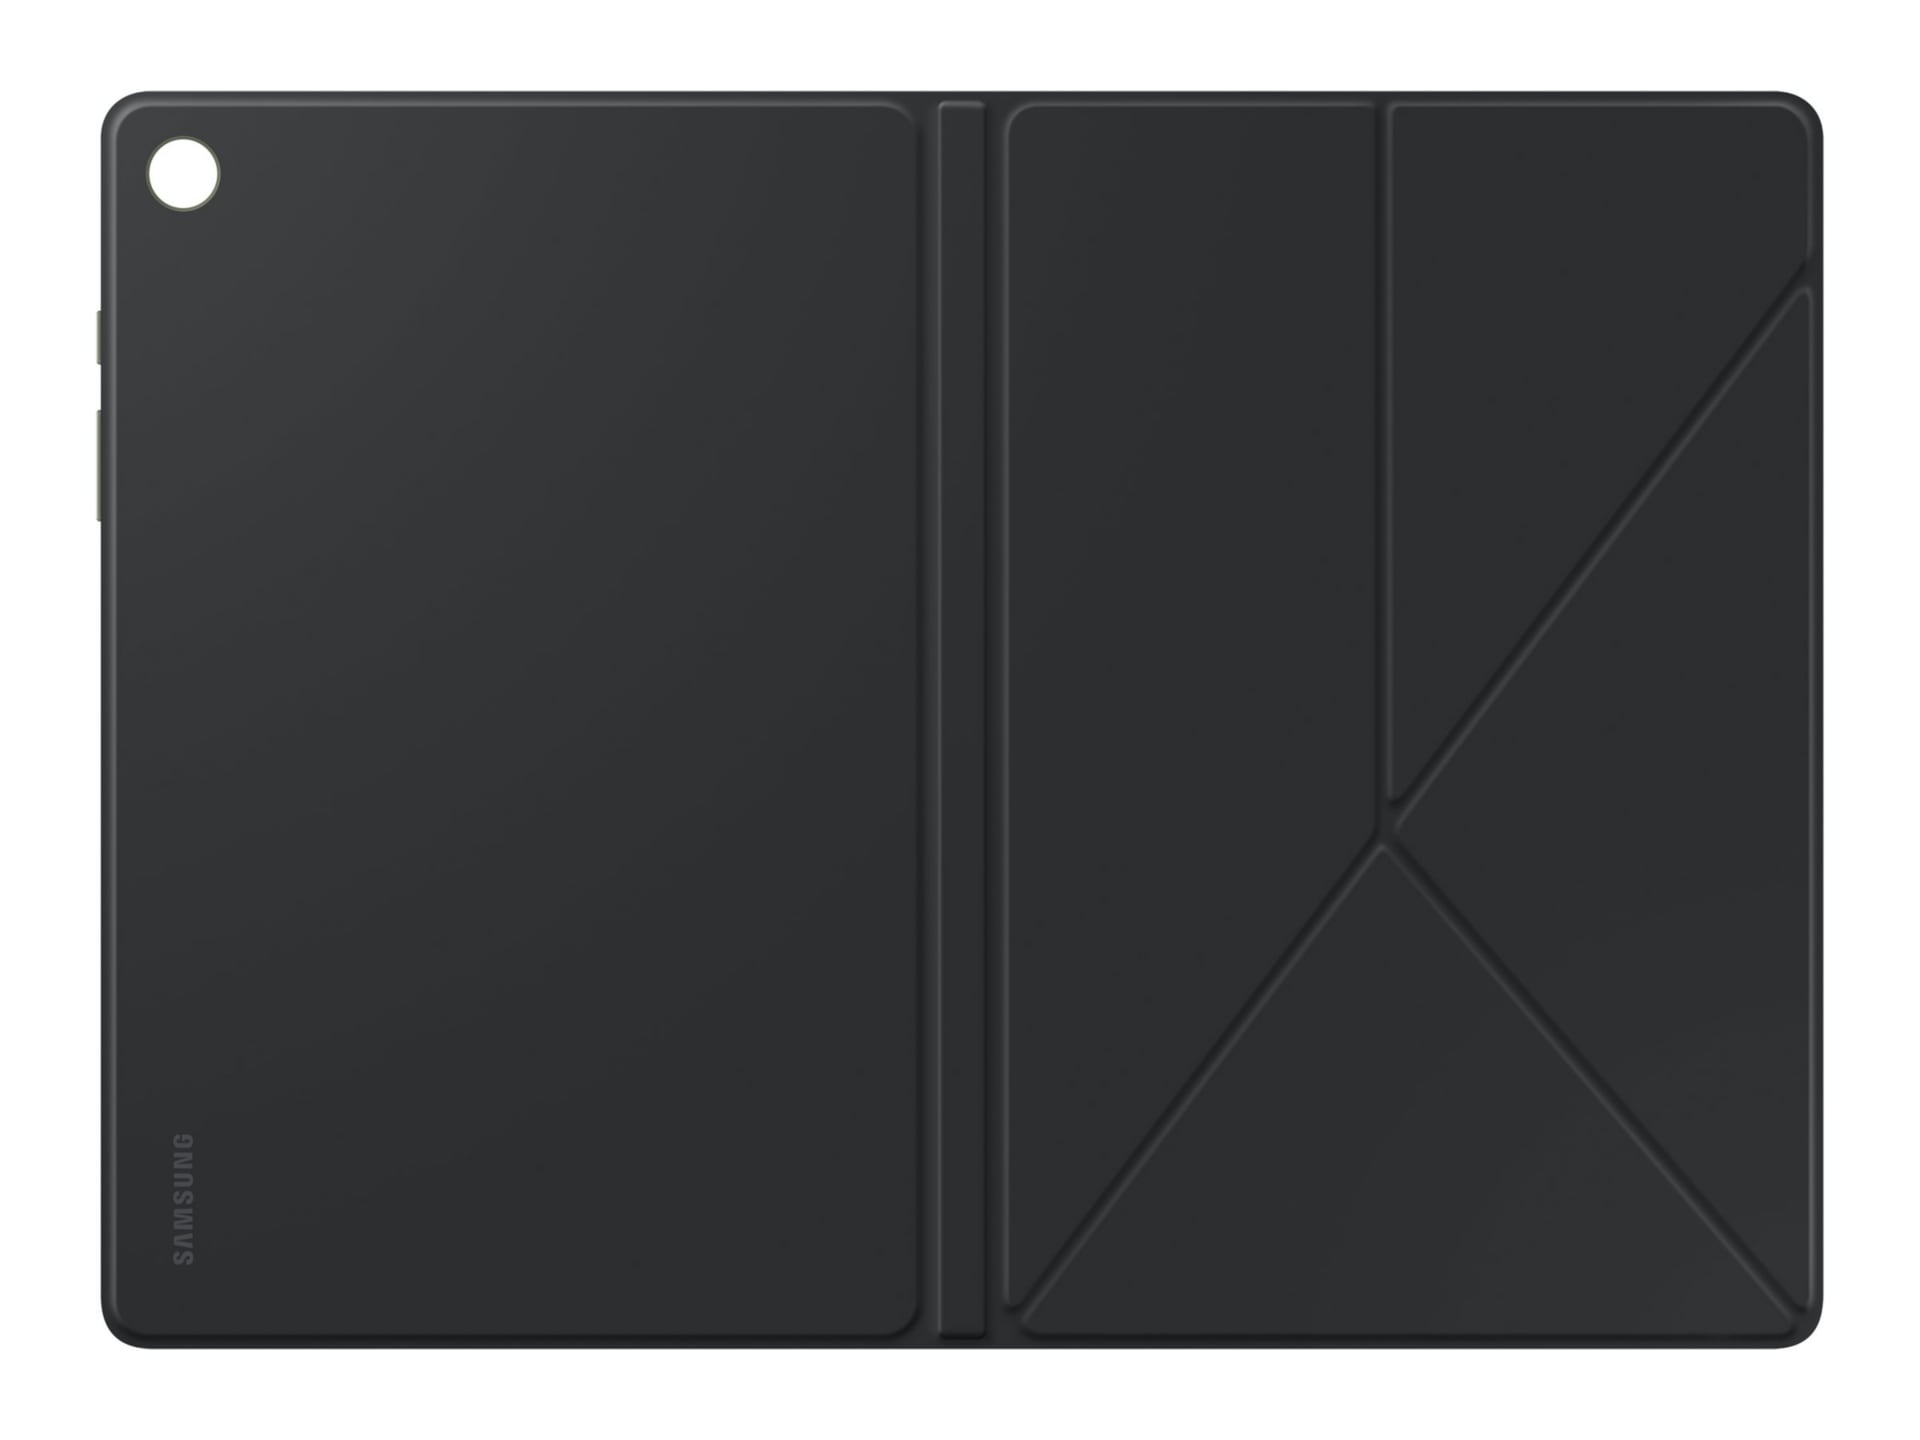 Samsung EF-BX210 - flip cover for tablet